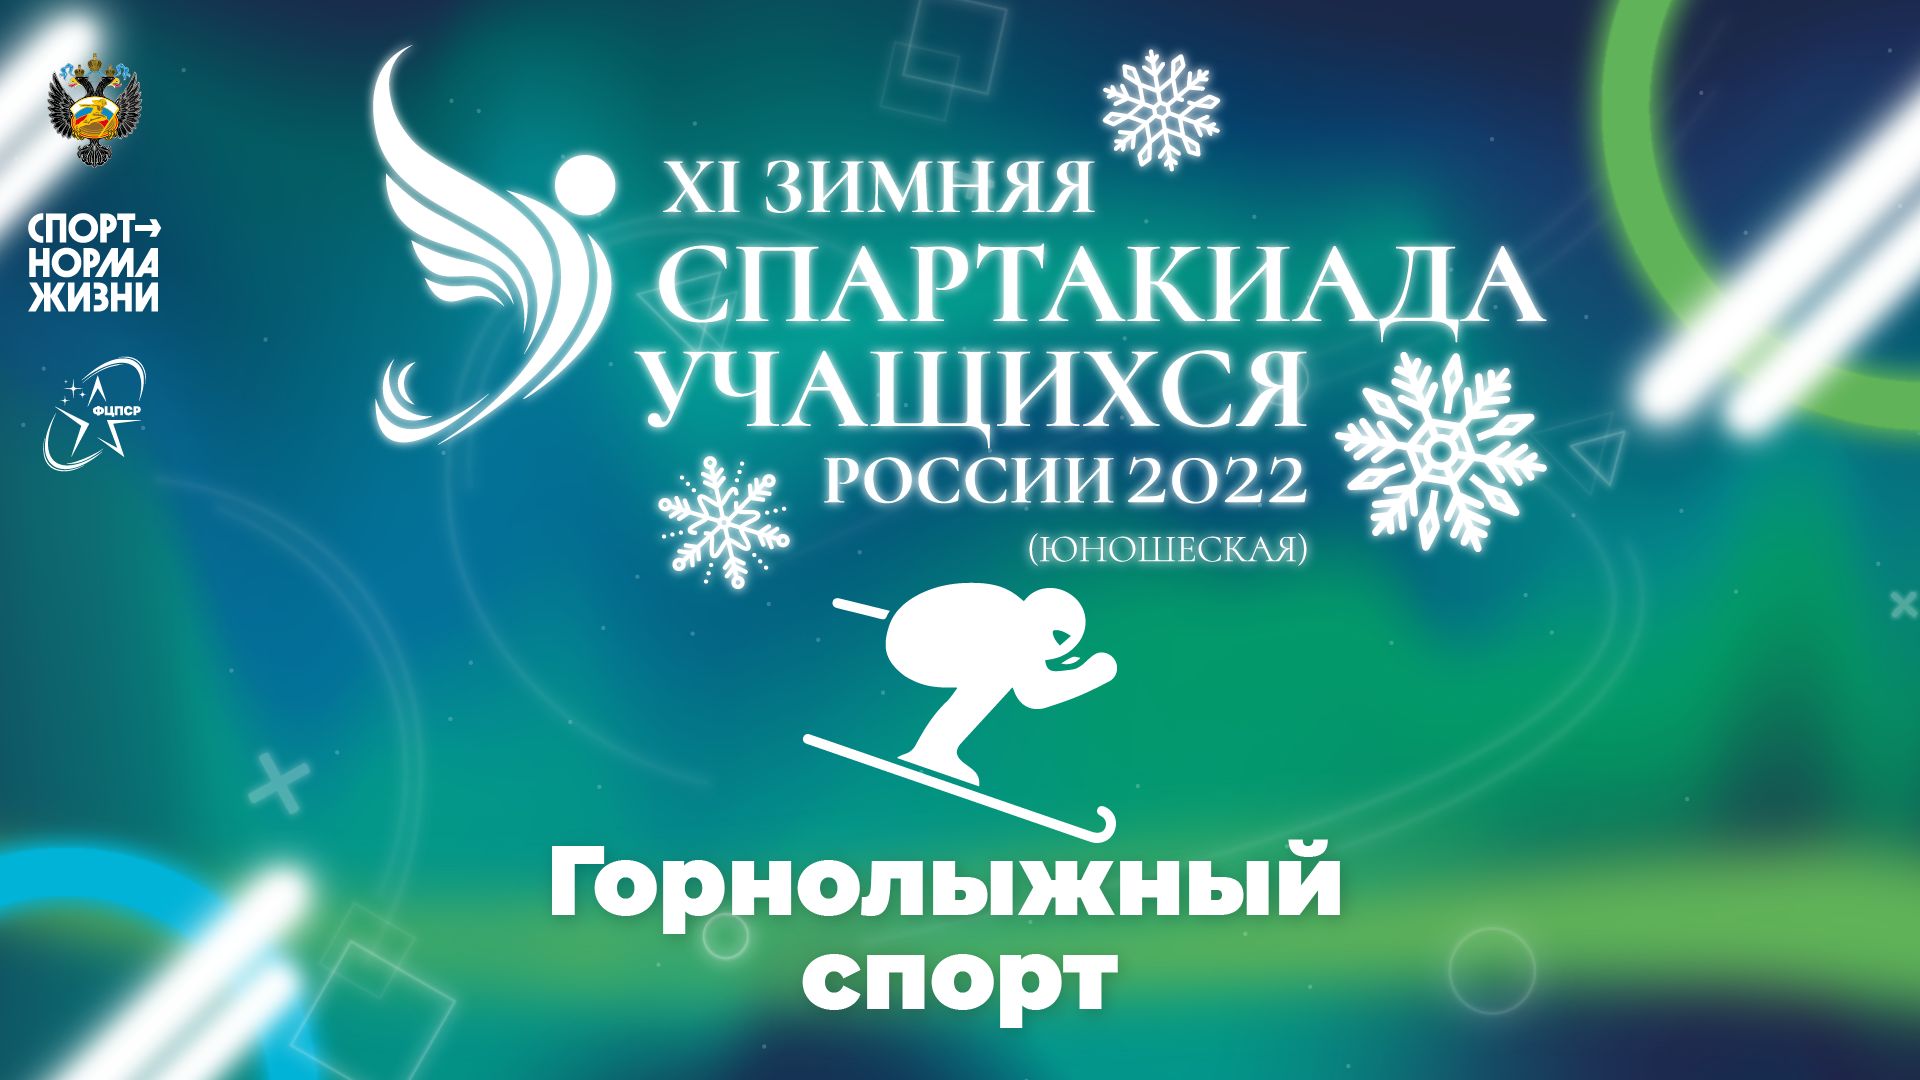 XI зимняя Спартакиада учащихся России 2022 года. Горнолыжный спорт